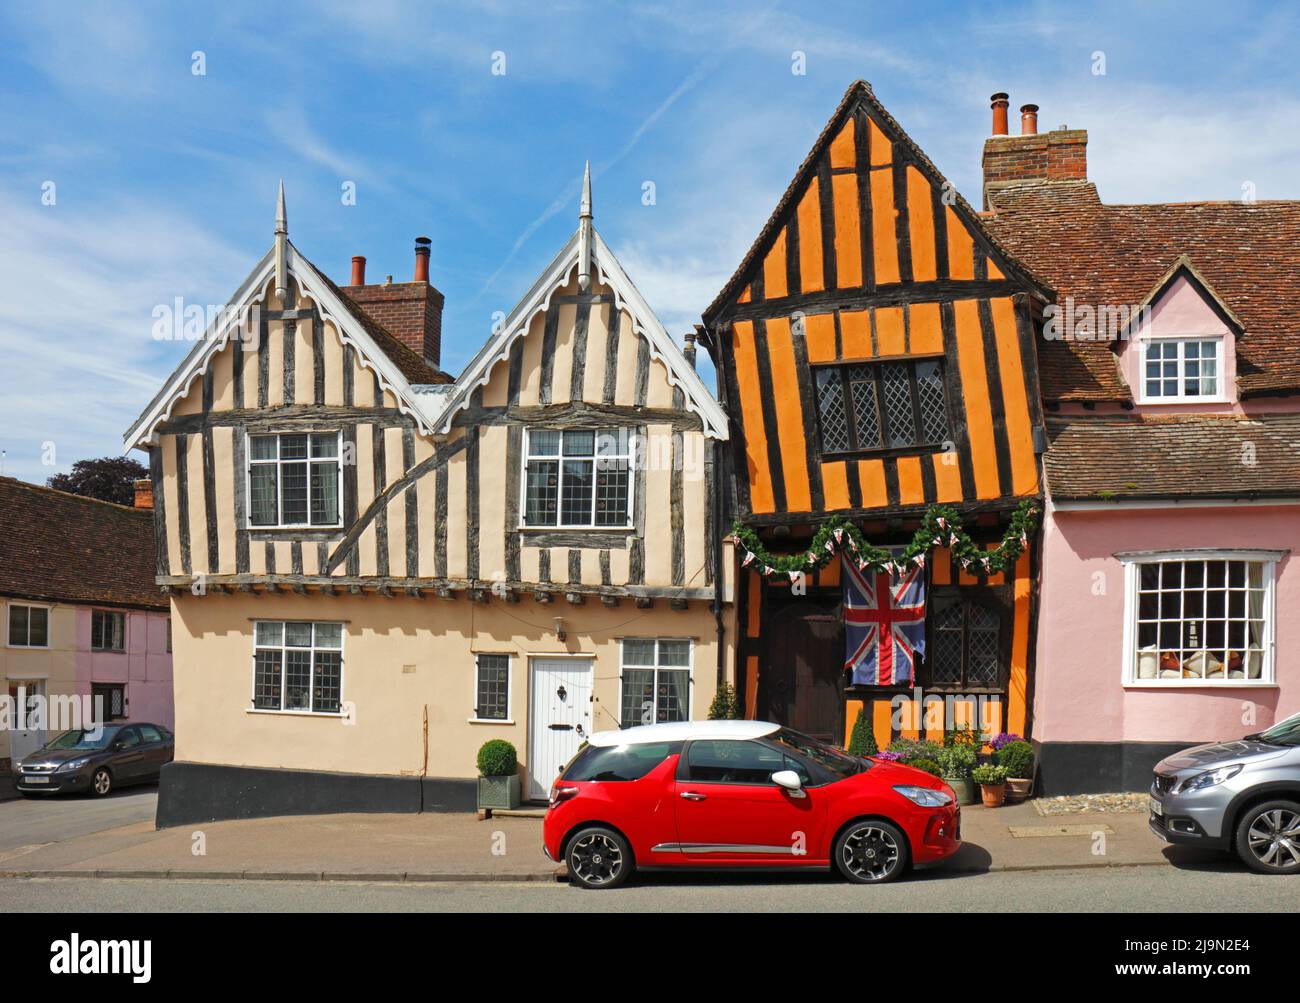 Una vista de la Crooked House, una casa histórica de entramado de madera de color naranja en el pueblo medieval de Lavenham, Suffolk, Inglaterra, Reino Unido. Foto de stock